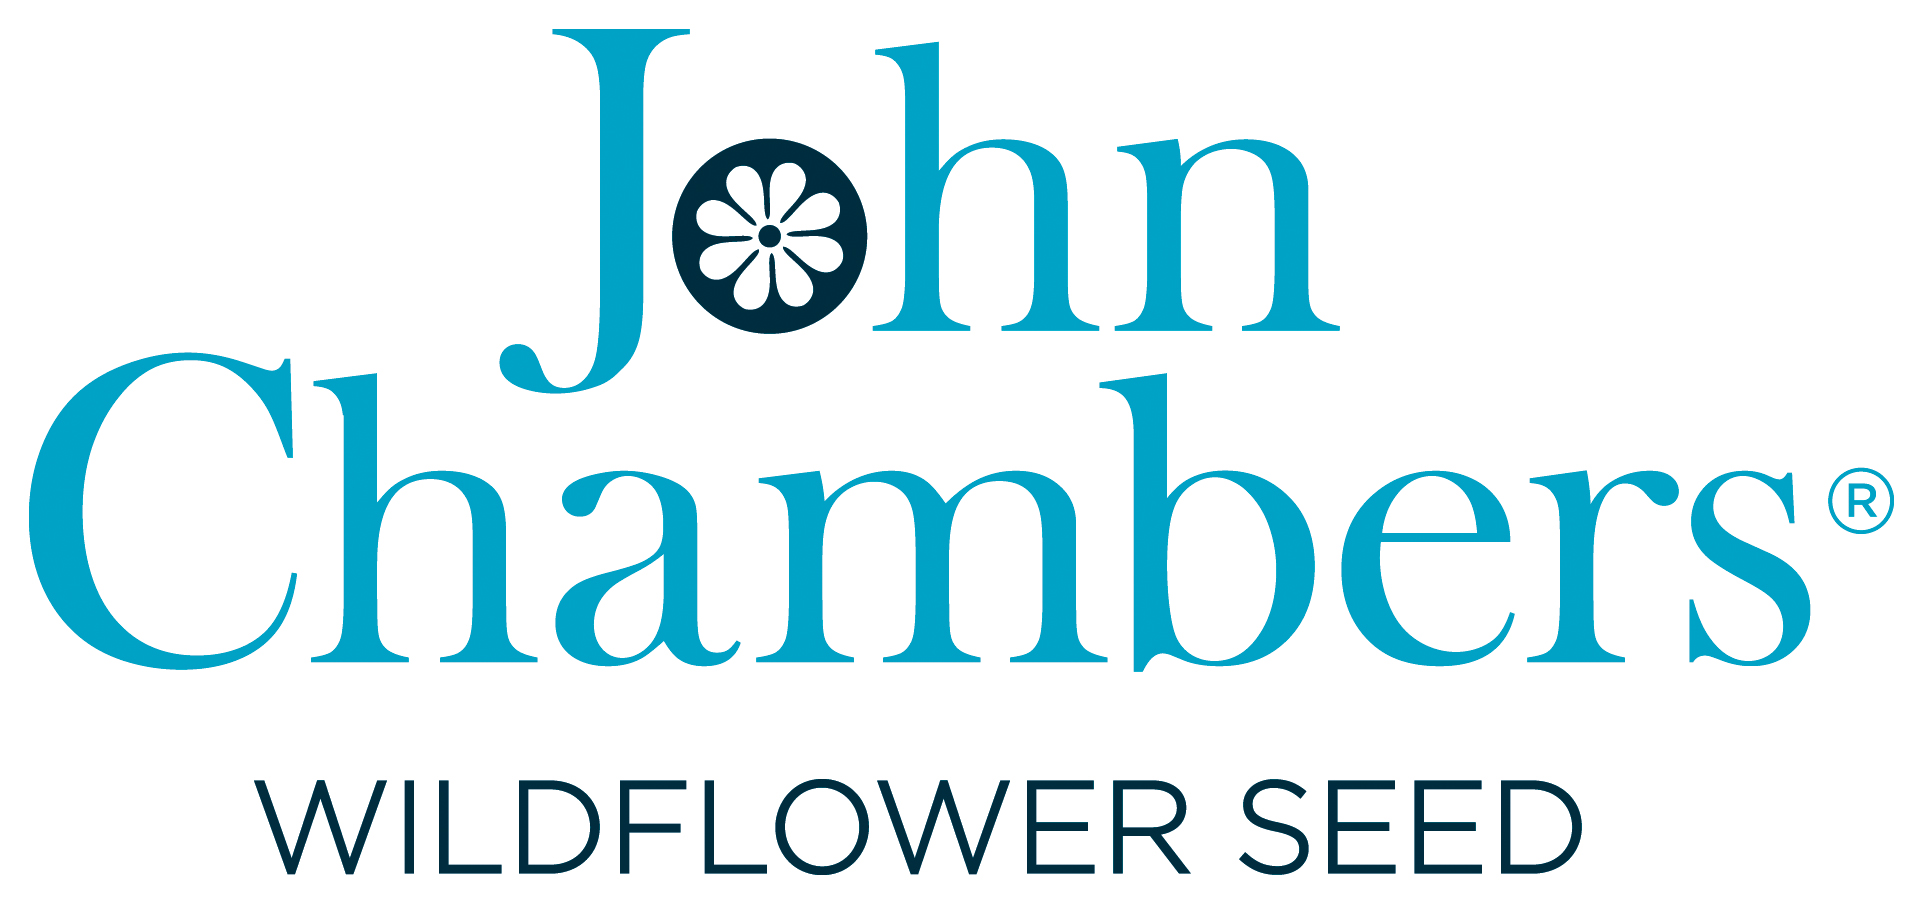 John Chambers Wildflowers